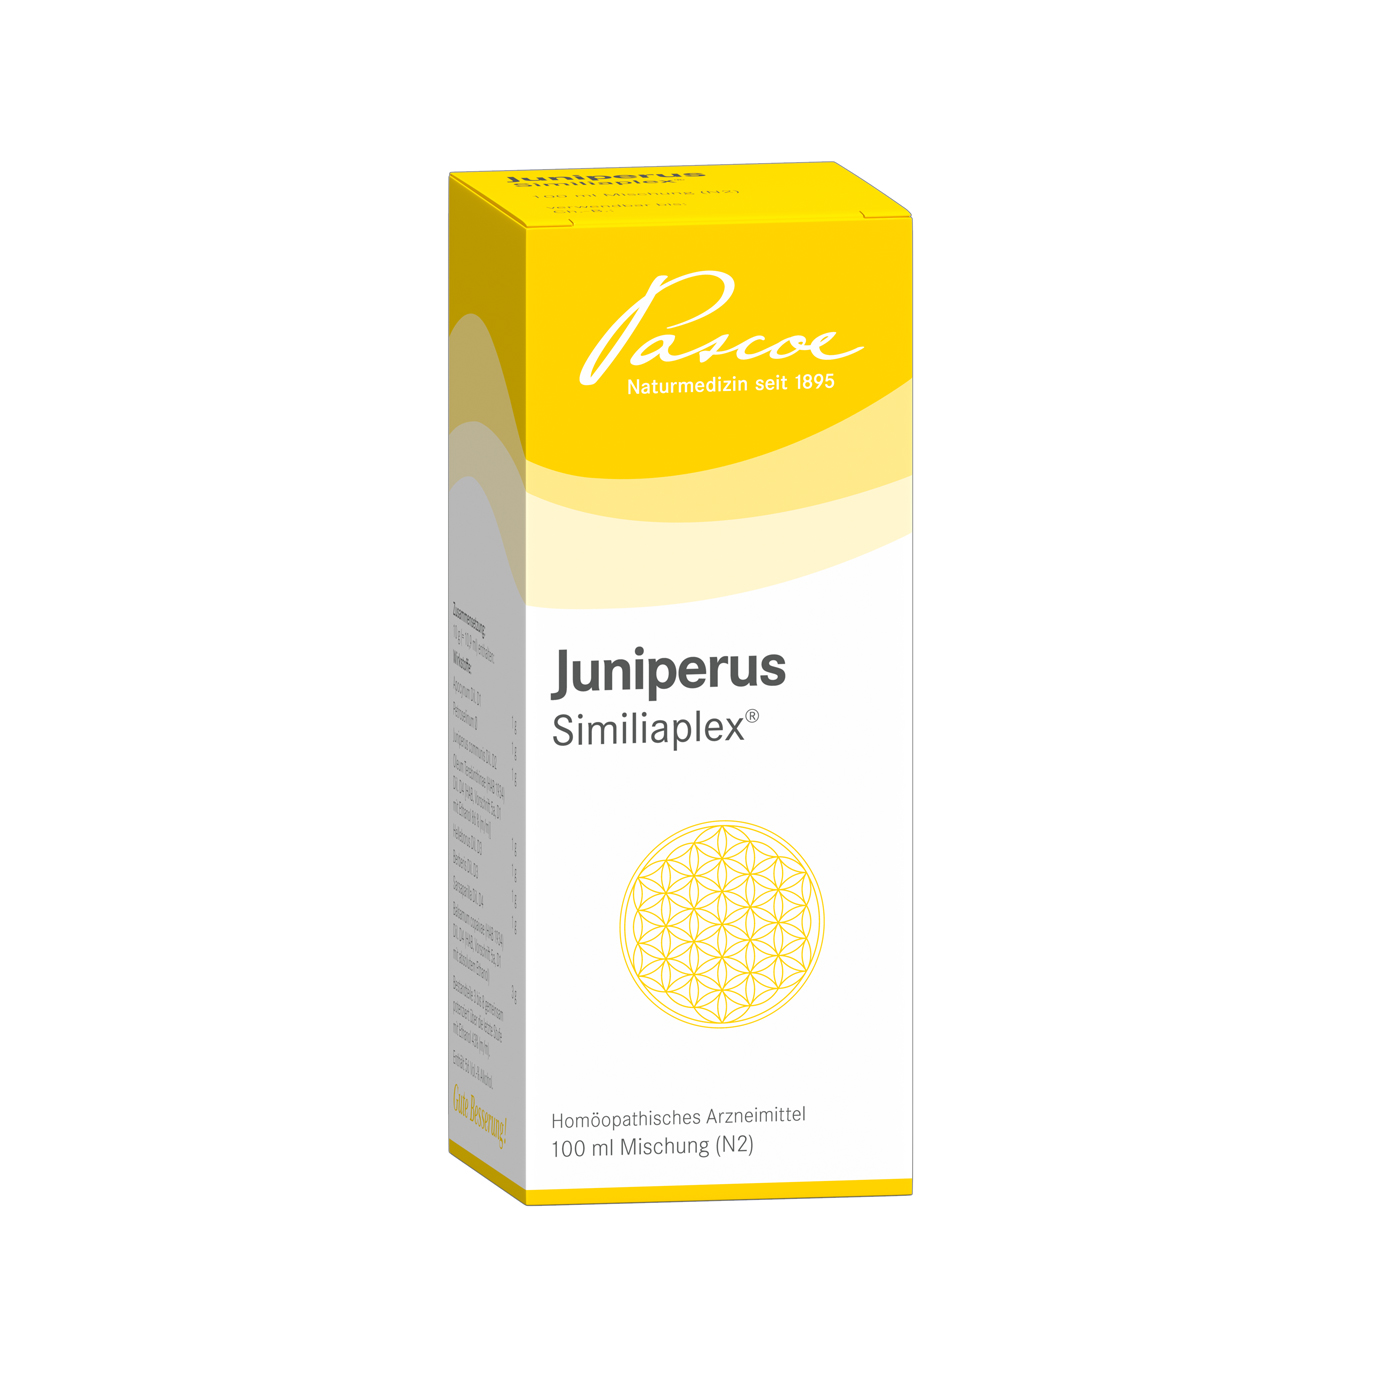 Juniperus Similiaplex R 100 ml Packshot PZN 02394865